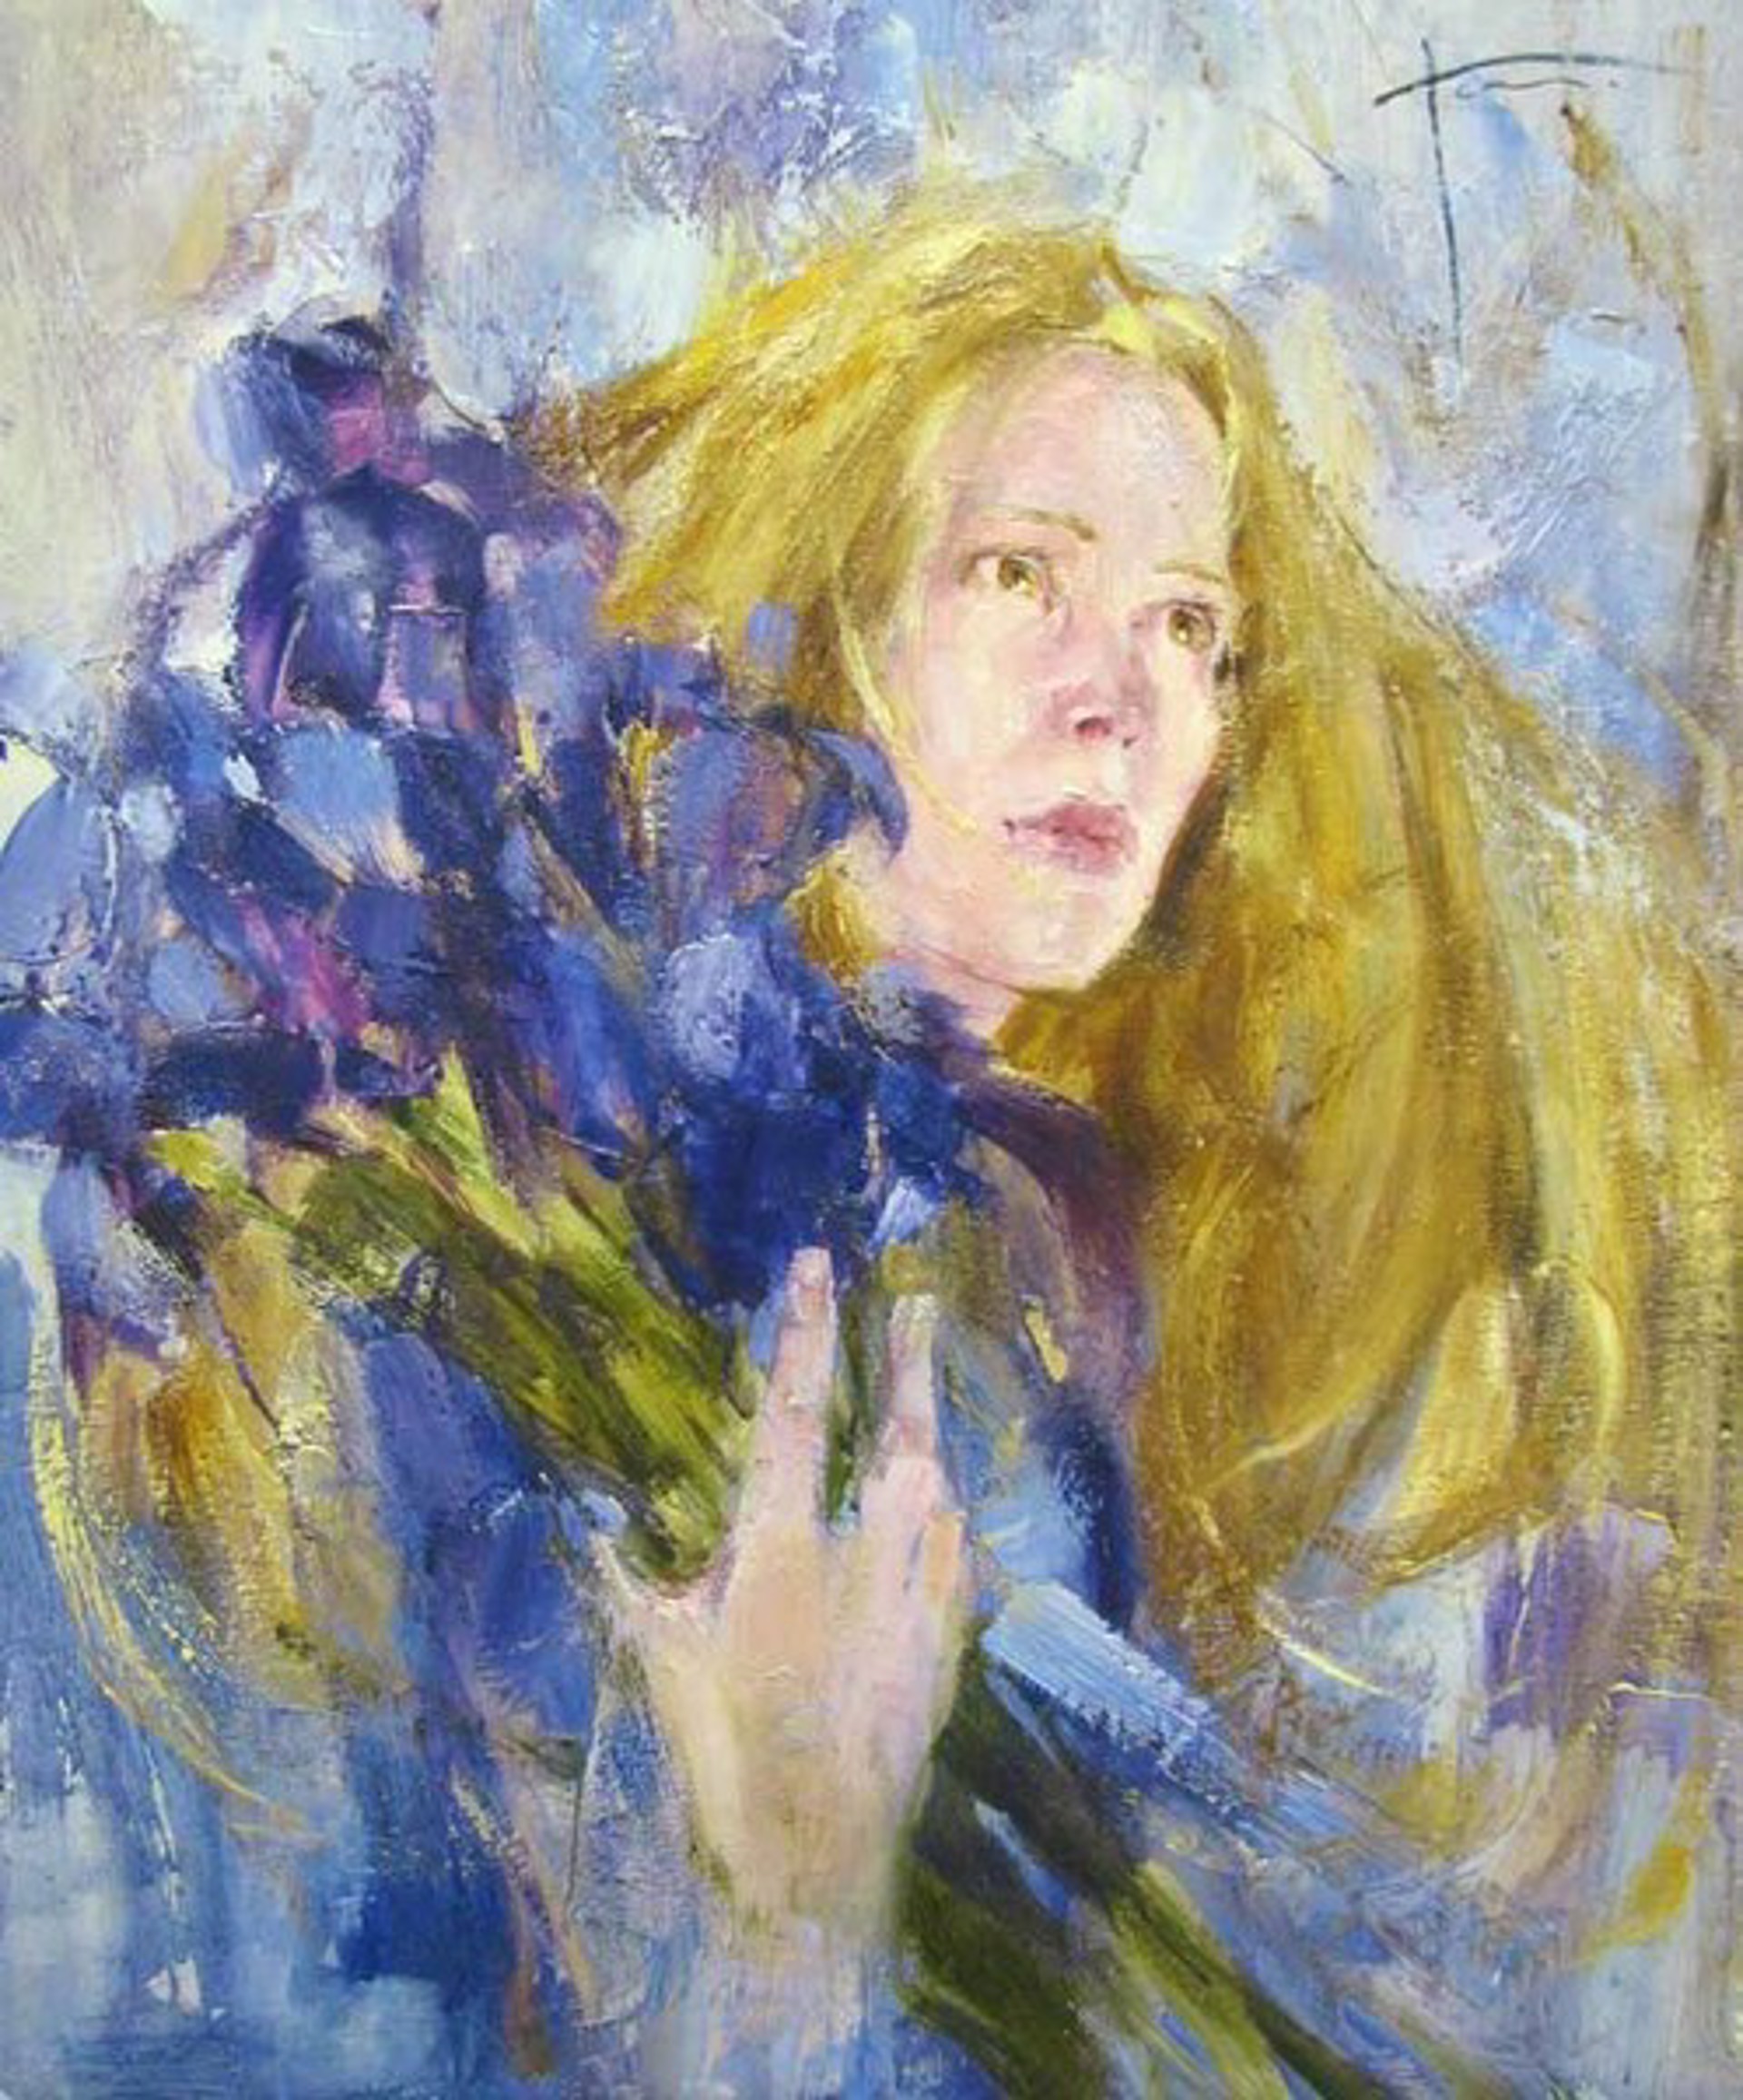 Sasha with Purple Irises by Yana Golubyatnikova